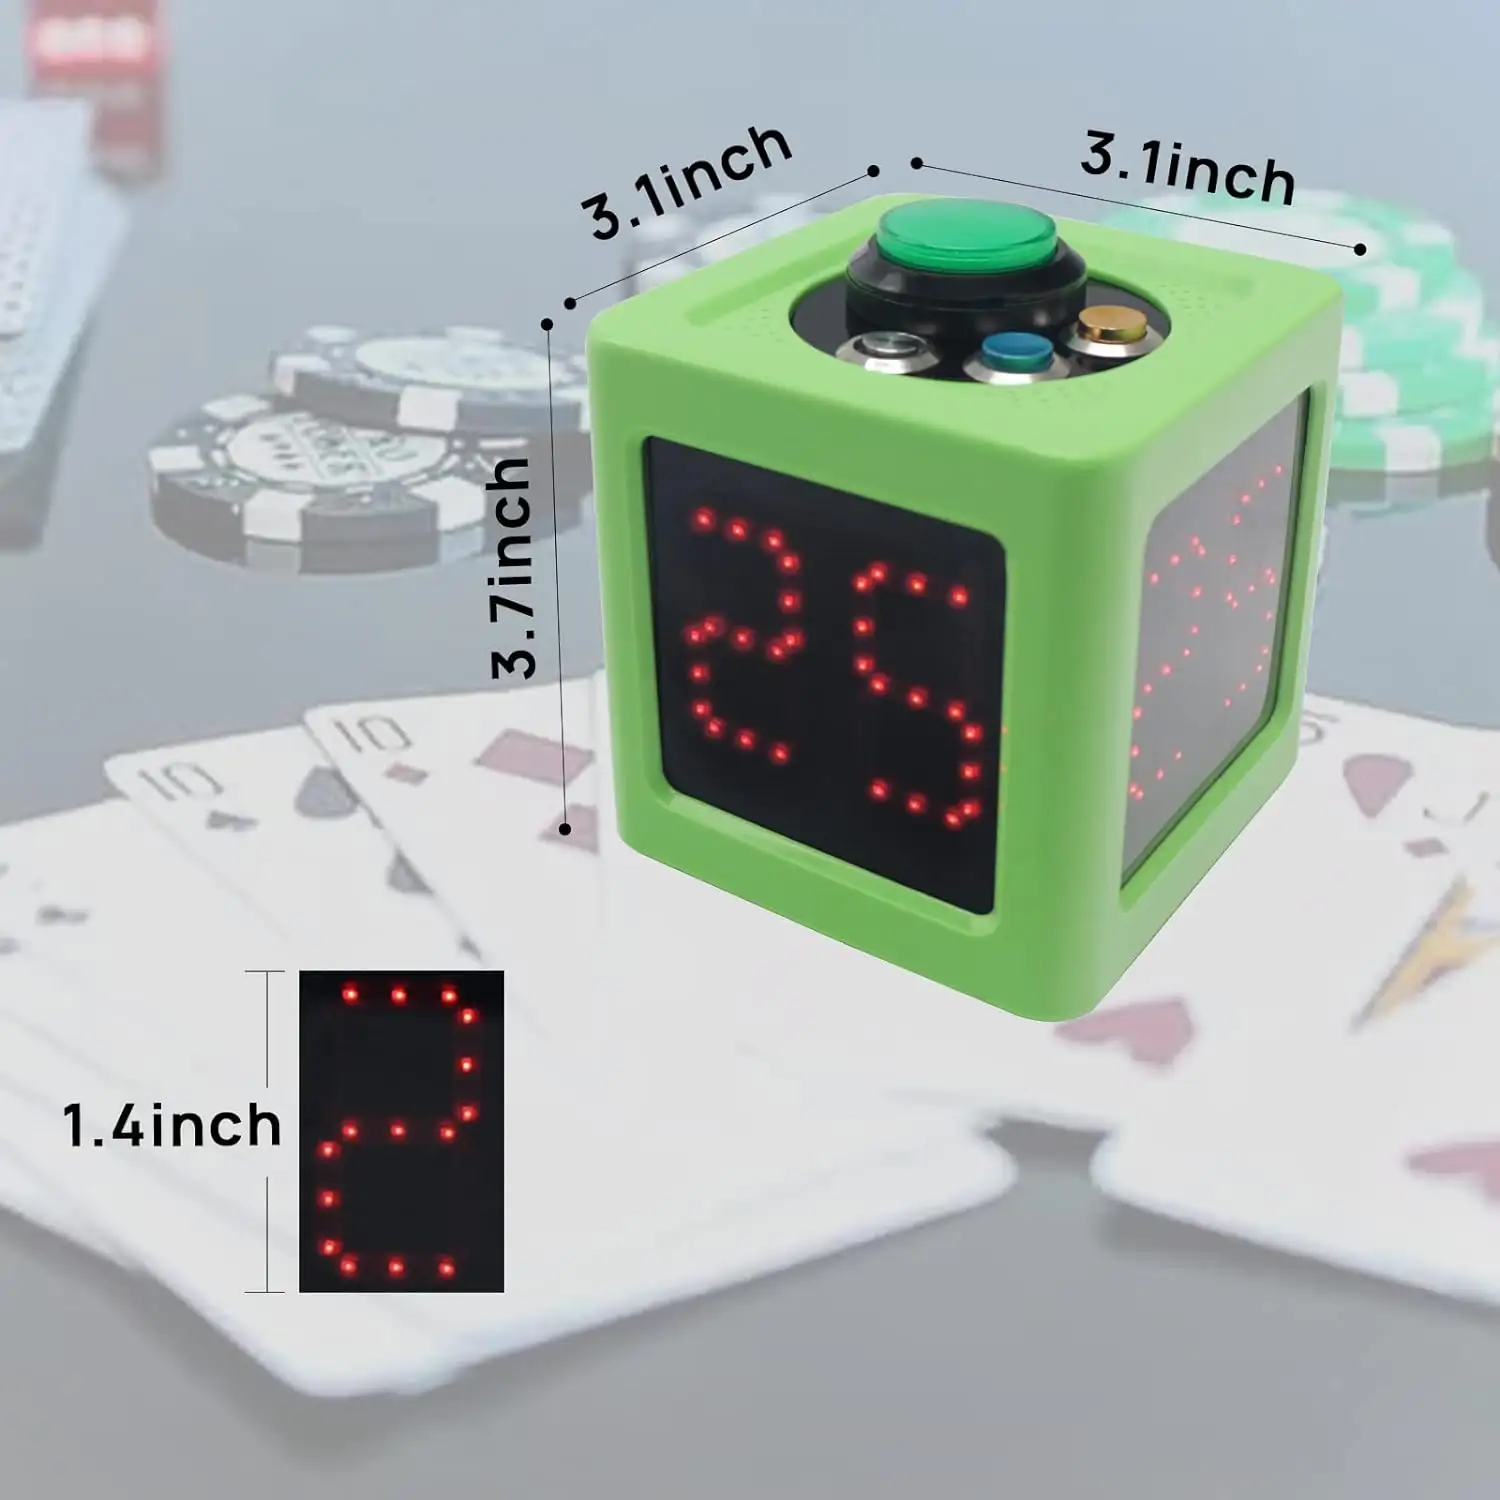 YIZHI nuevo temporizador de póquer reloj de disparo cronómetro de Cuenta regresiva con 2 juegos de temporizador preestablecido personalizado para póquer/ajedrez/Mahjong/juego de fiesta